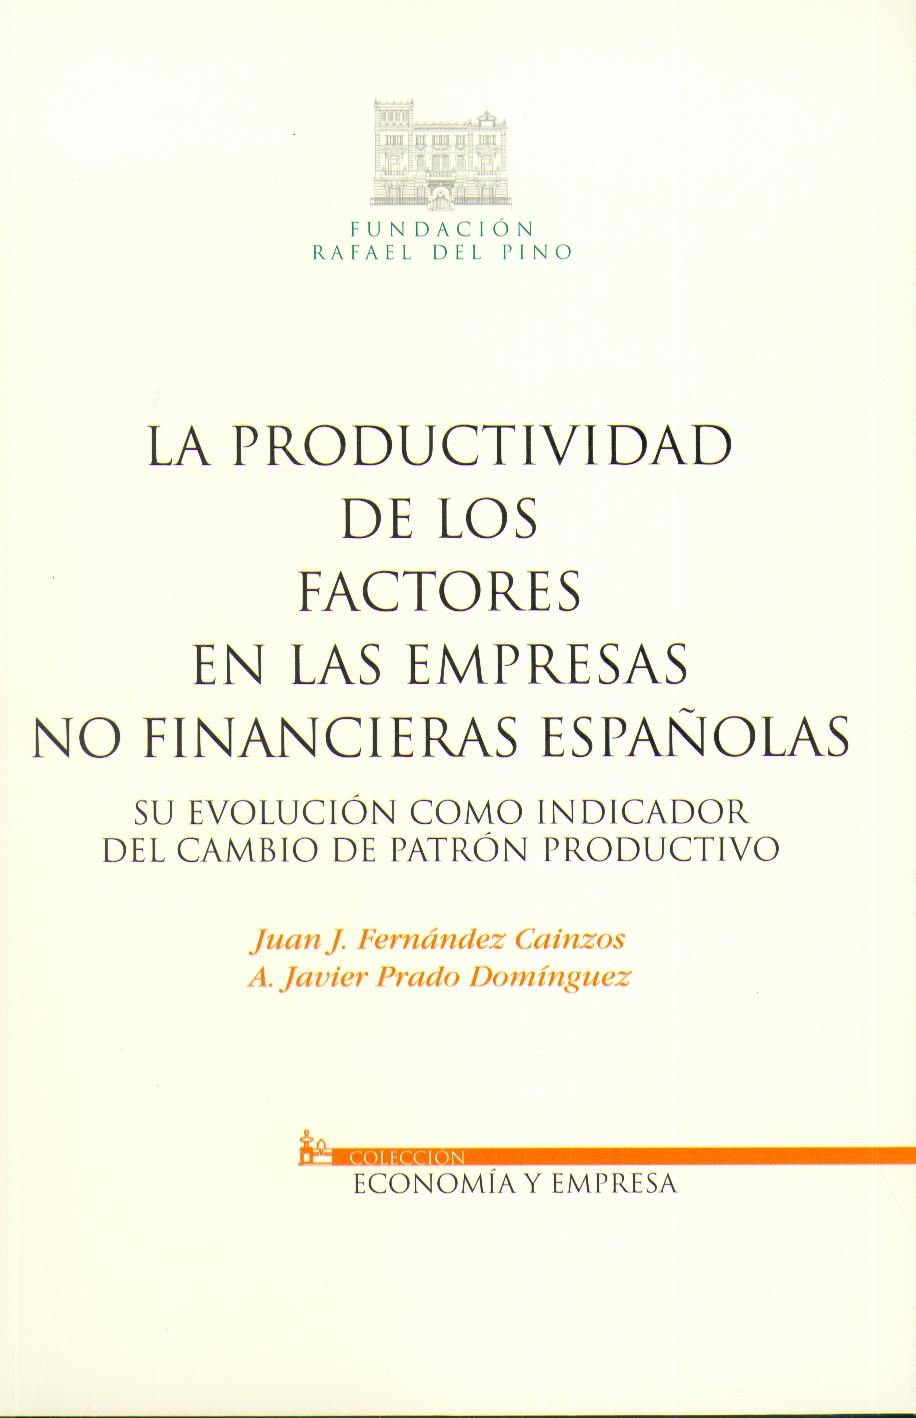 La Productividad de los Factores en las Empresas no Financieras Españolas. "Su Evolución como Indicador del Cambio de Patrón Productivo."